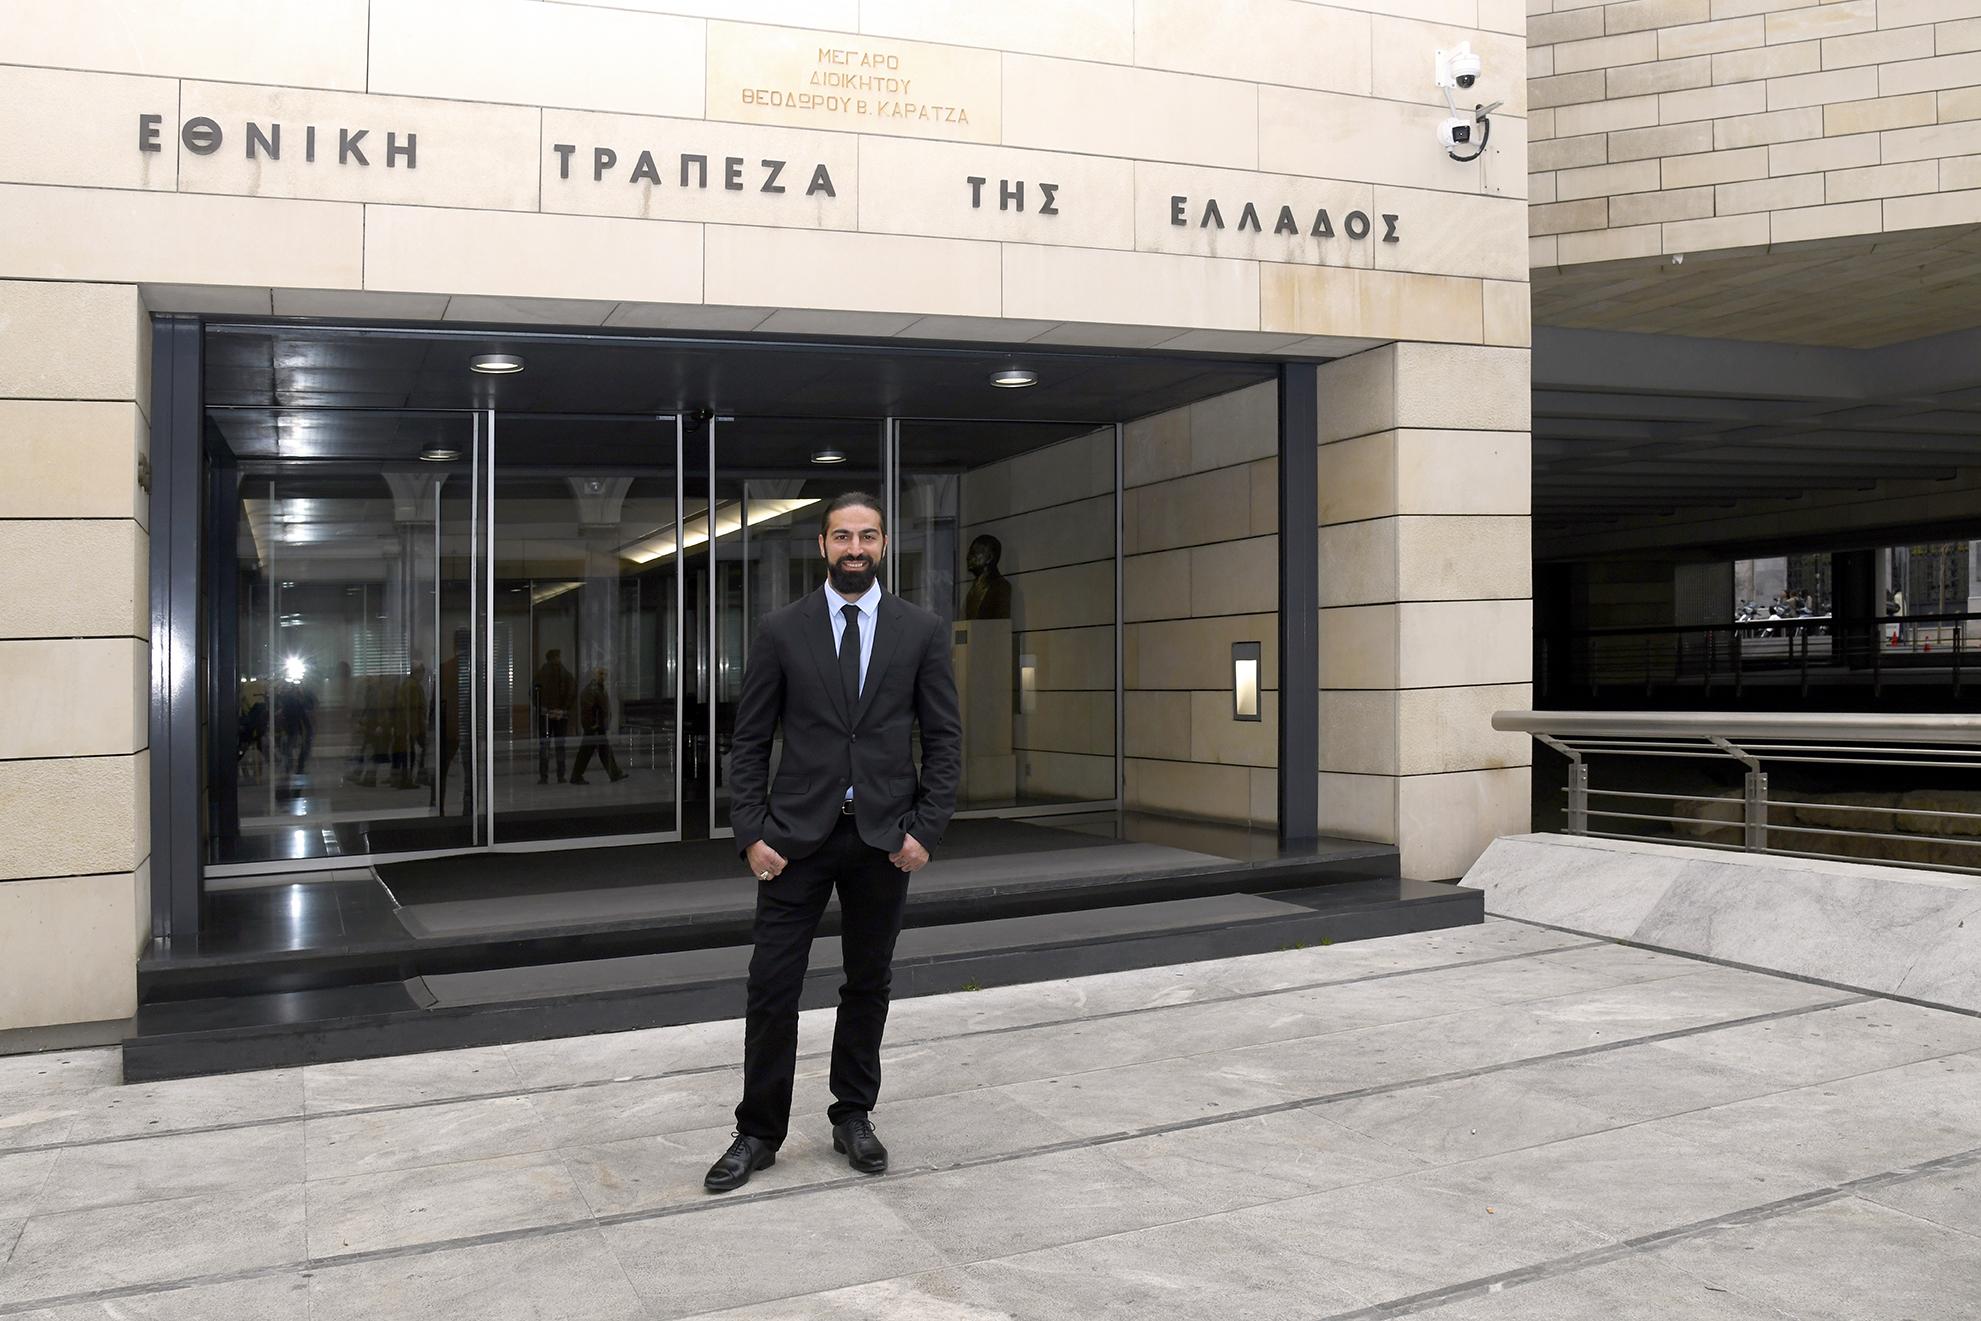 Ο Μιχάλης Σεΐτης και η Εθνική Τράπεζα ενώνουν τις δυνάμεις τους για νέες διακρίσεις